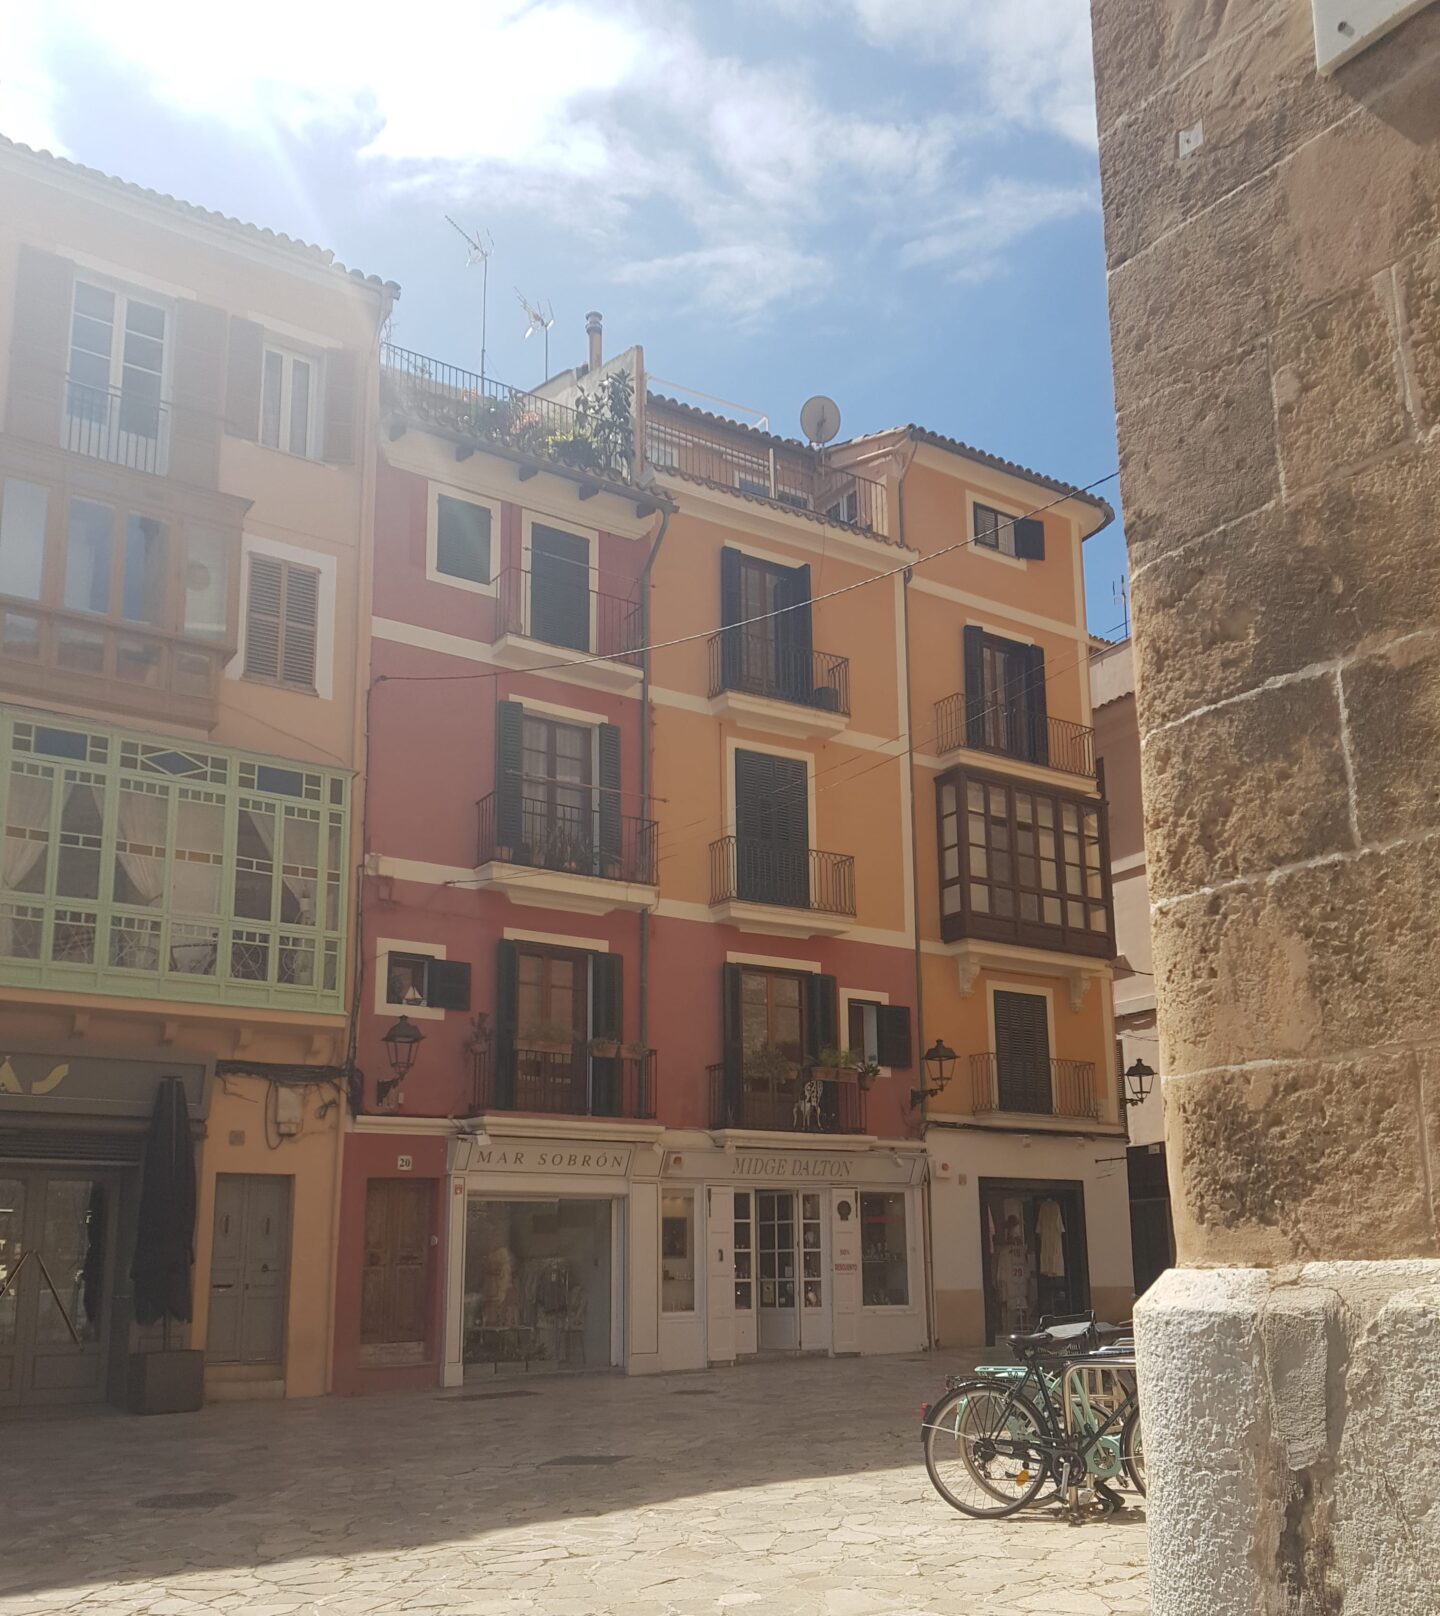 Palma de Mallorca 